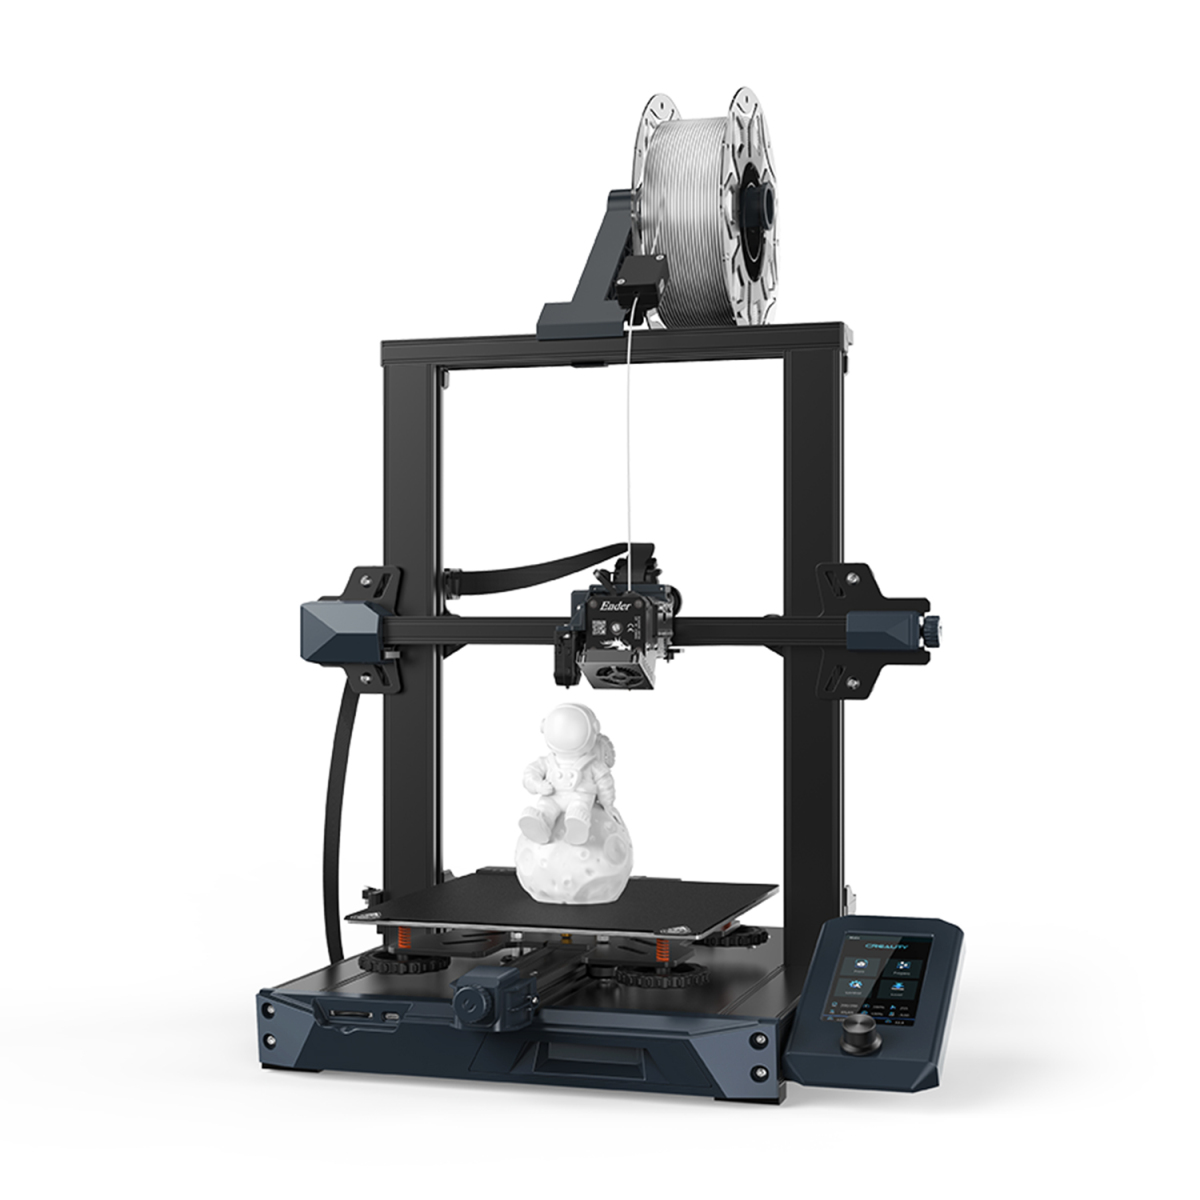 Creality3D - Creality Ender-3 S1 Imprimante 3D bureau, impression 3D FDM,  taille construction 220 x 220 x 270 mm, avec extrudeuse directe,  plate-forme d'impression en acier à ressort PC, double axe Z